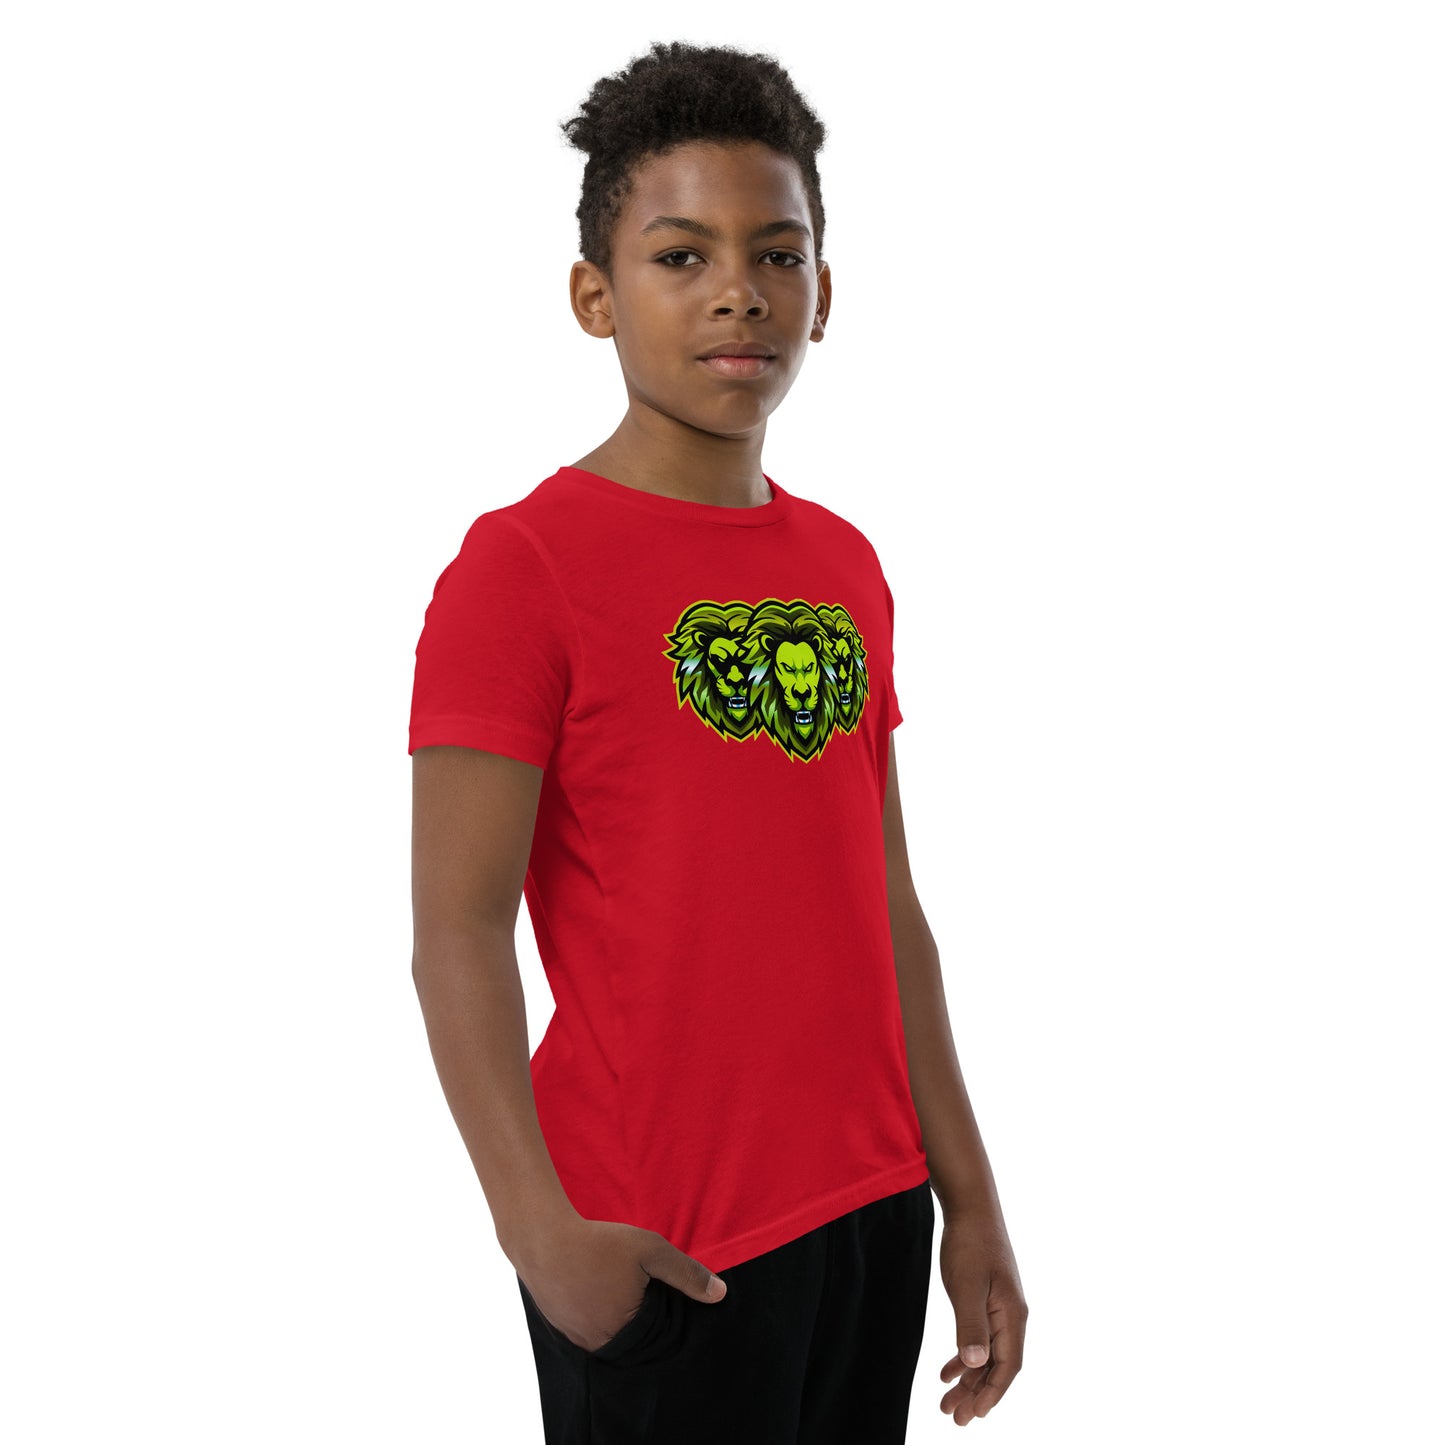 LionSquad Youth Short Sleeve T-Shirt - LionSquad